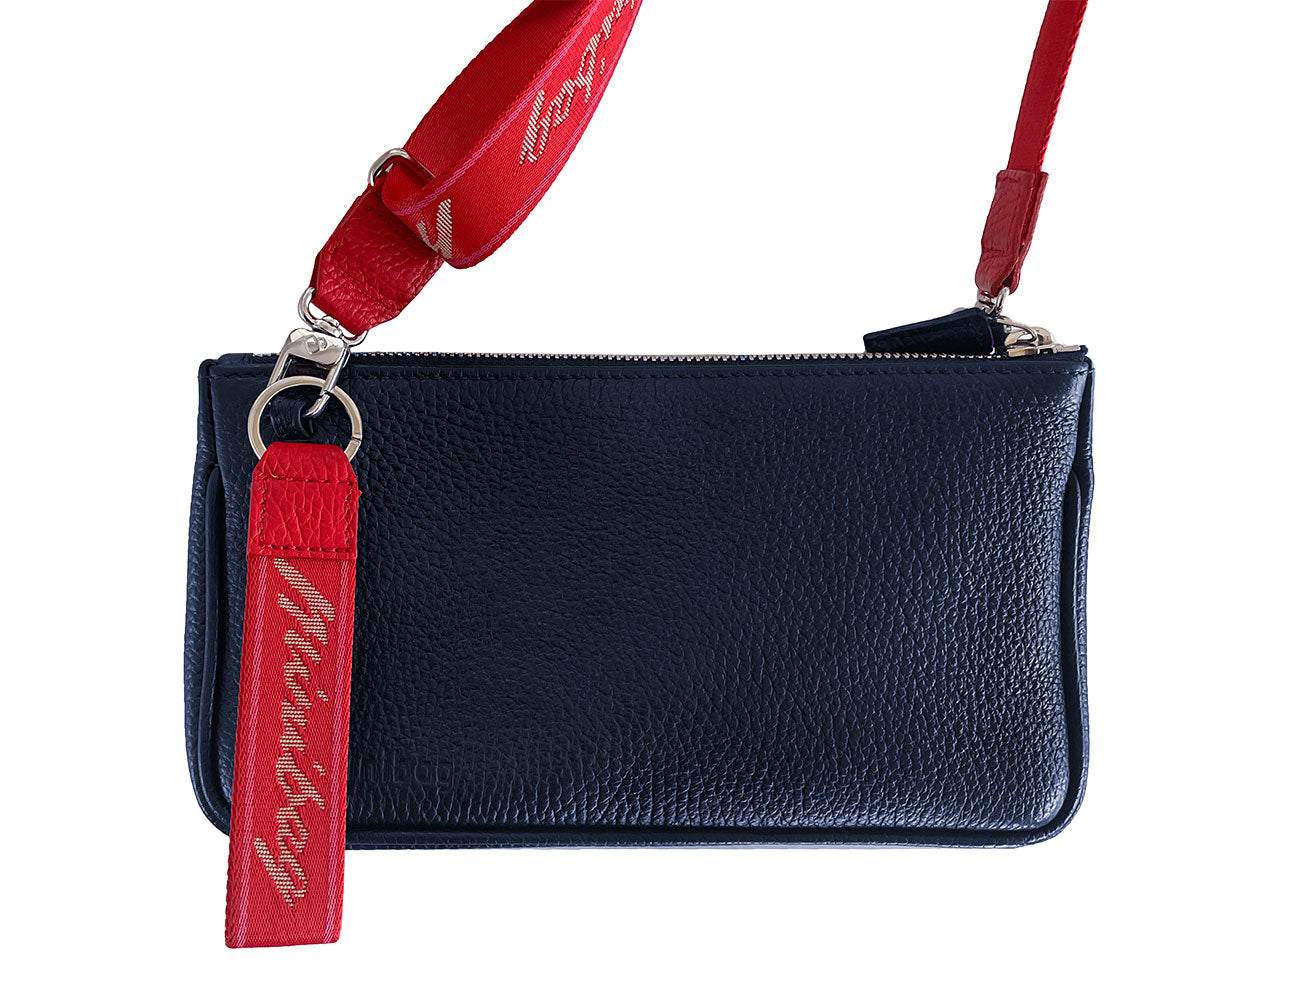 Minibag textile strap red, Textilgurt minibag rot, Textilgurt für Taschen, minibag navy